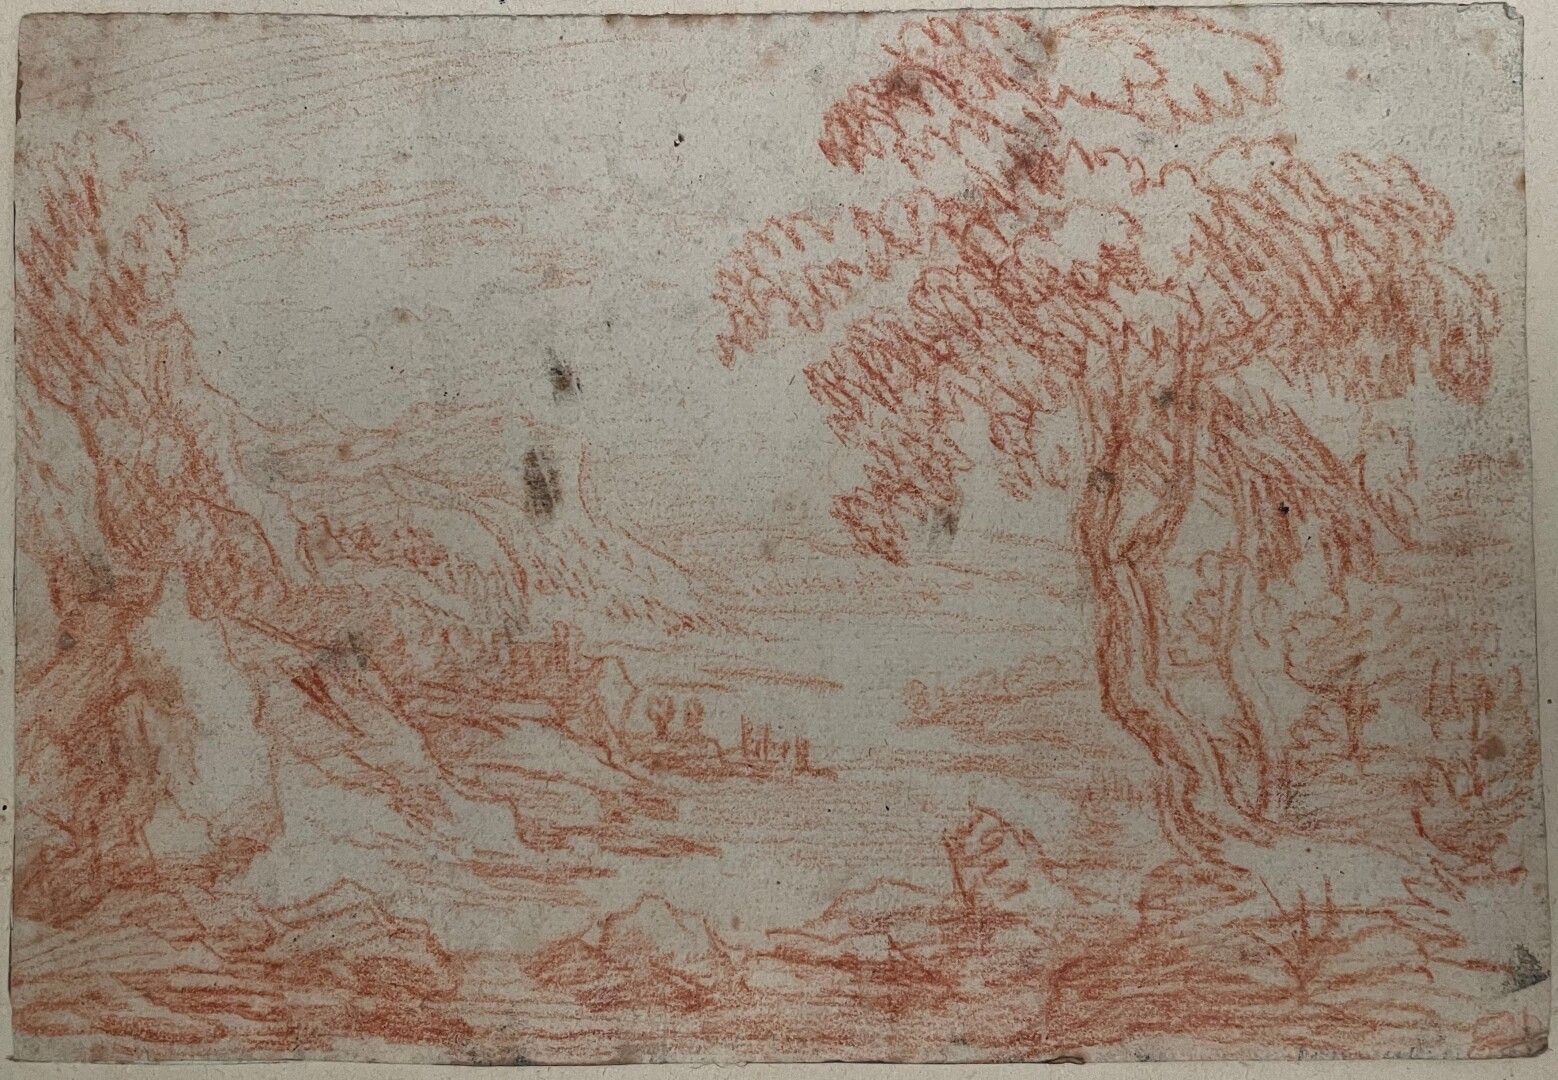 Null Scuola del 18° secolo

Paesaggio

Sanguigna

12,5 x 18,5 cm.